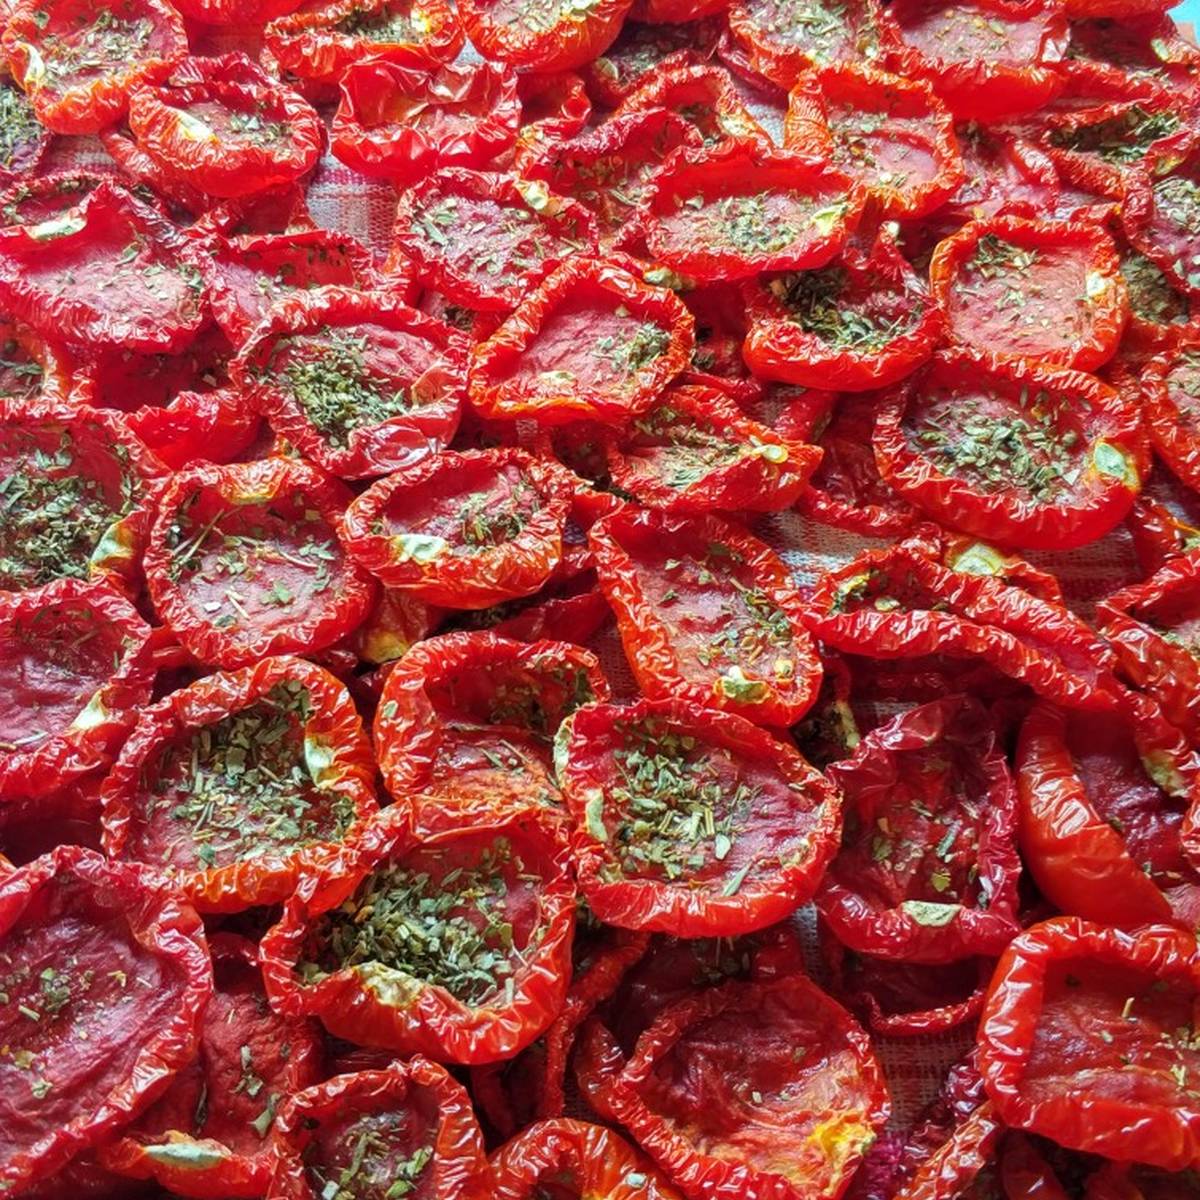 Вяленые помидоры на зиму в домашних условиях - 10 рецептов с пошаговыми фото